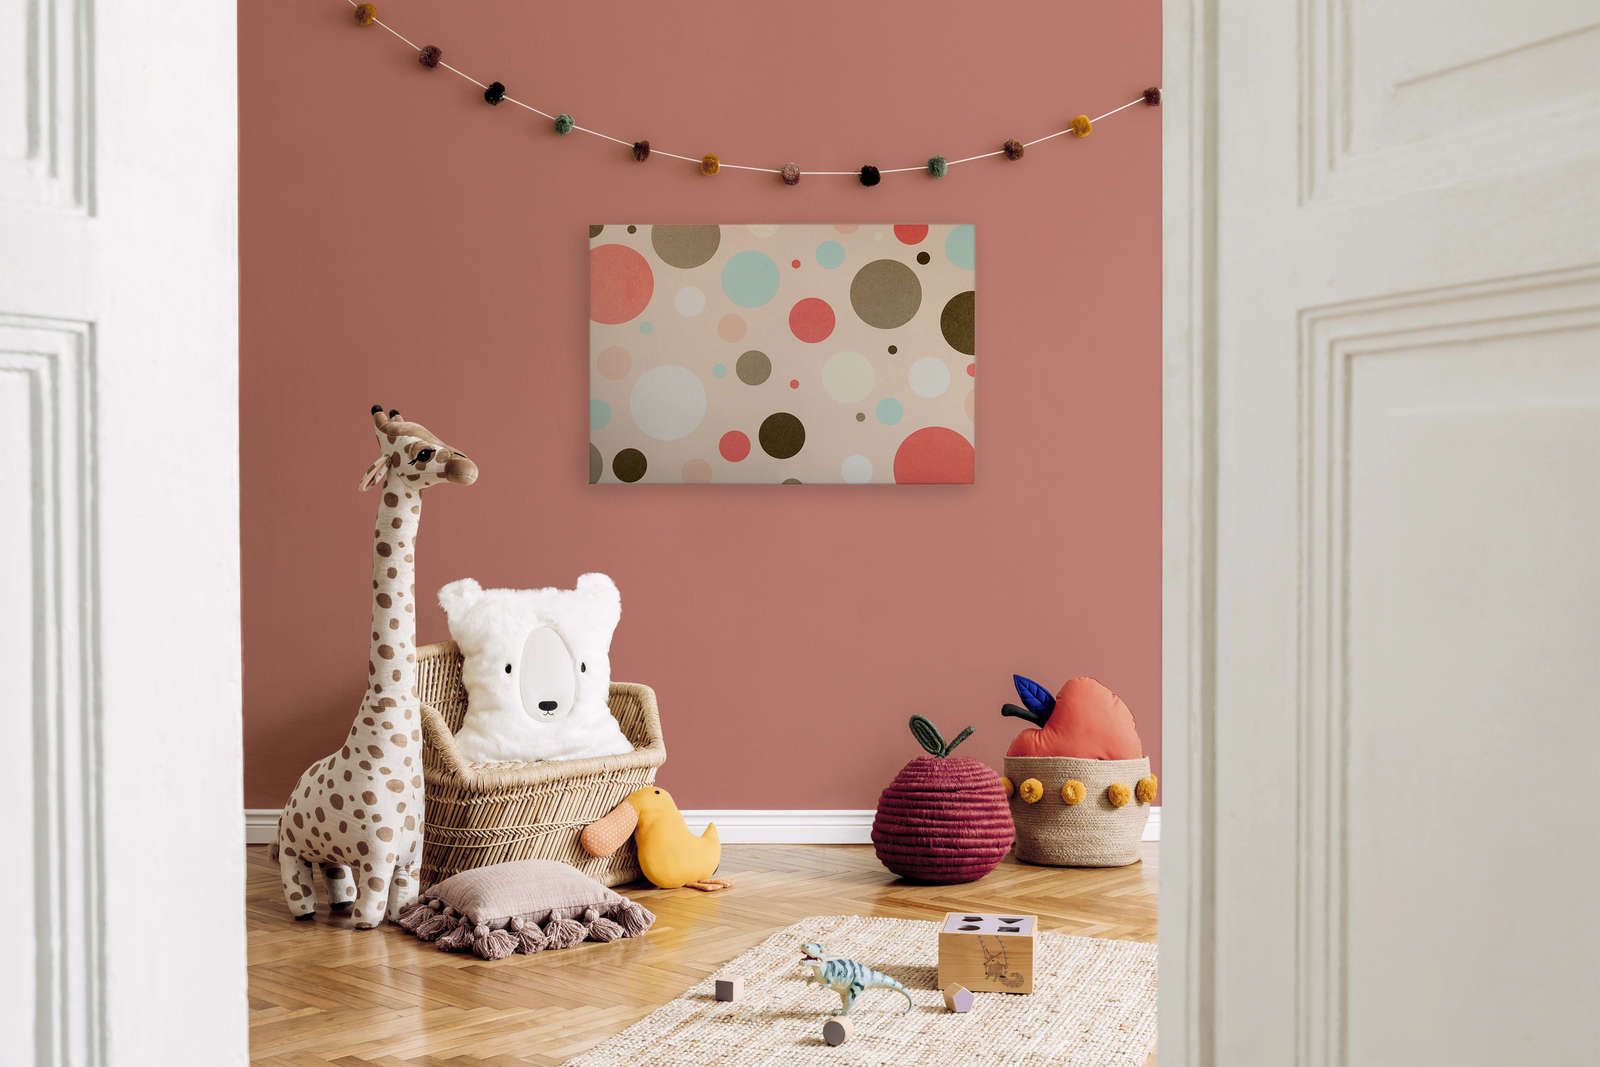             Toile pour chambre d'enfant avec cercles colorés - 90 cm x 60 cm
        